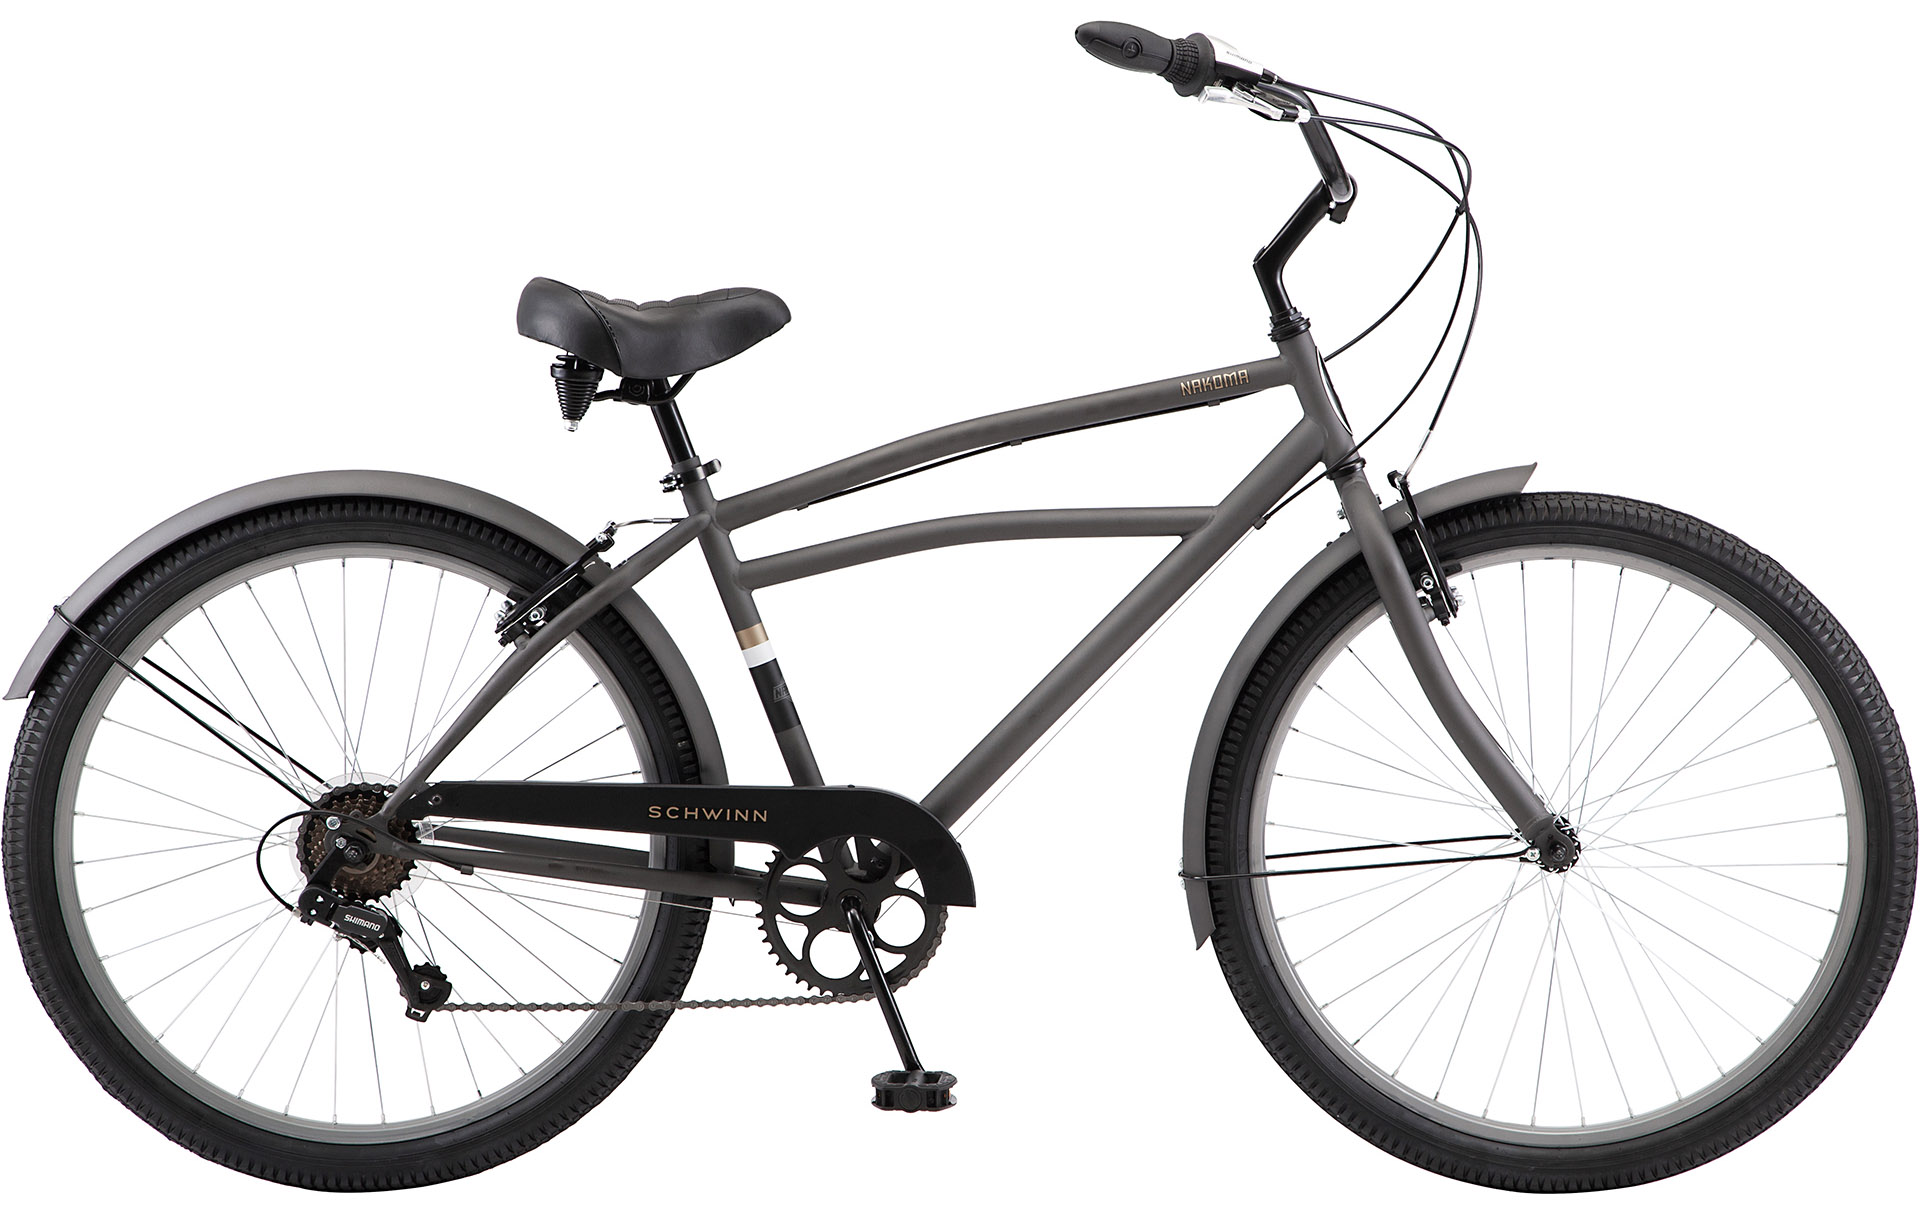  Отзывы о Городском велосипеде Schwinn Nakoma (2021) 2021